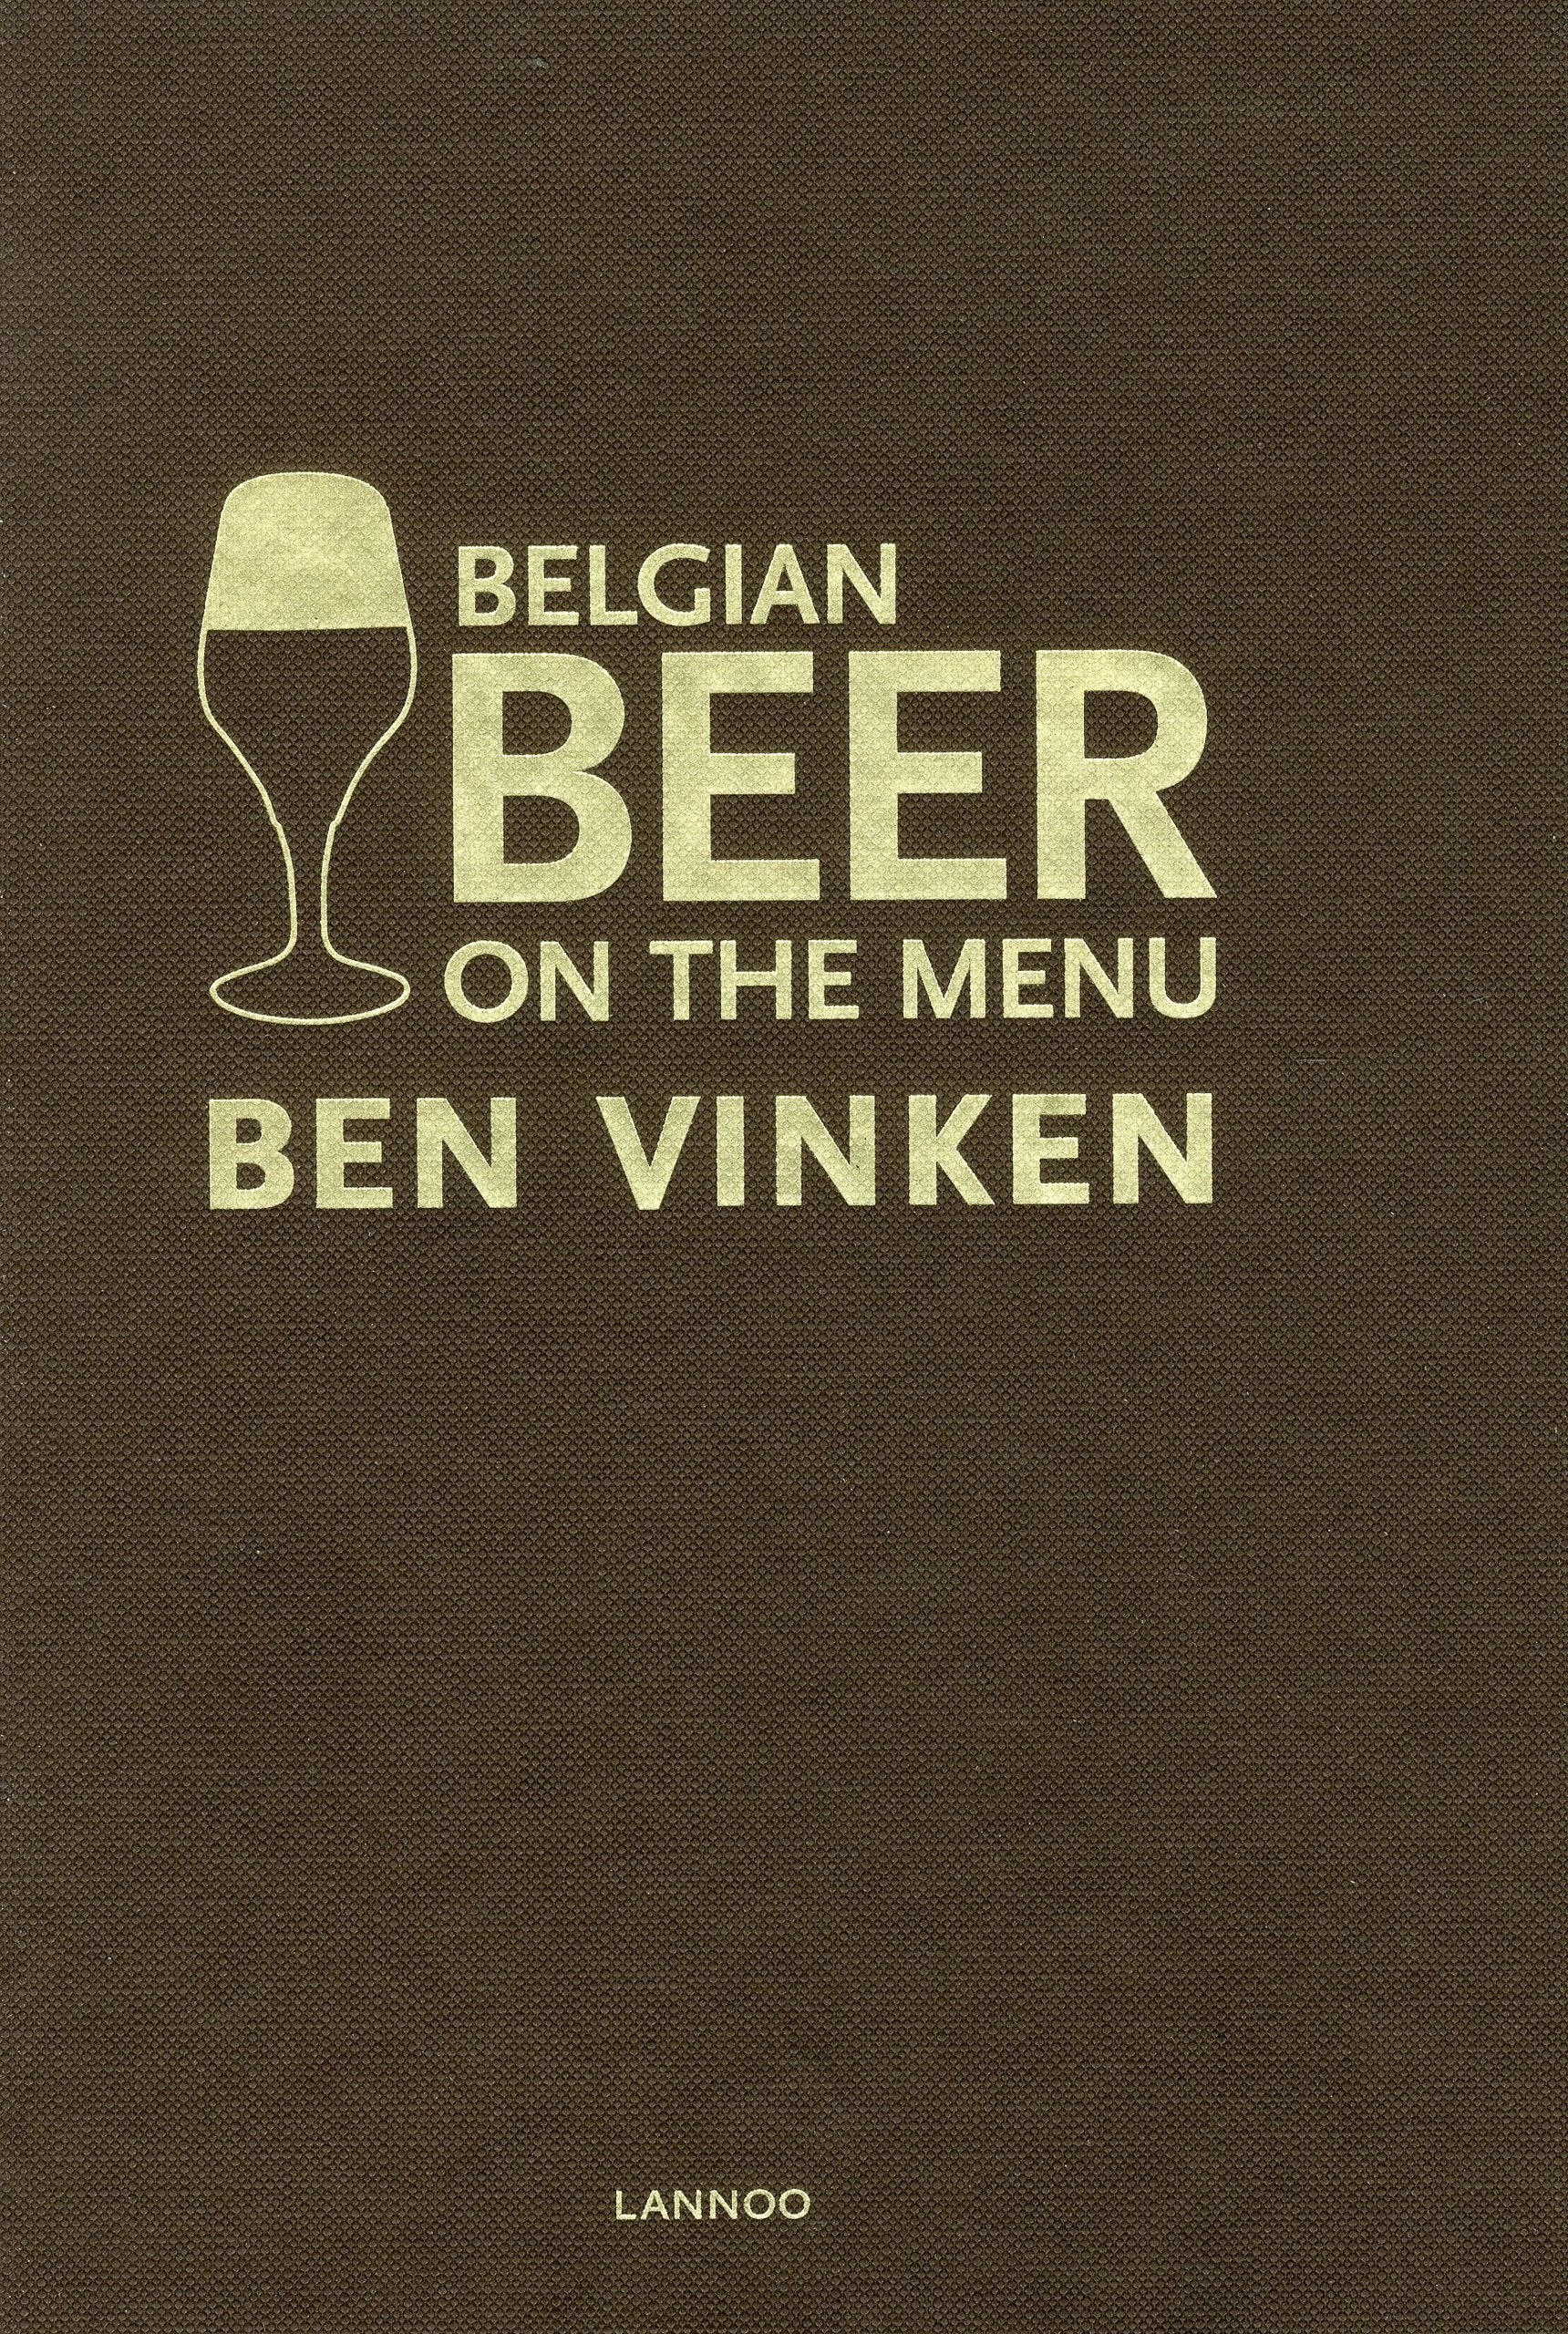 Belgian Beer on the Menu (Ben Vinken)